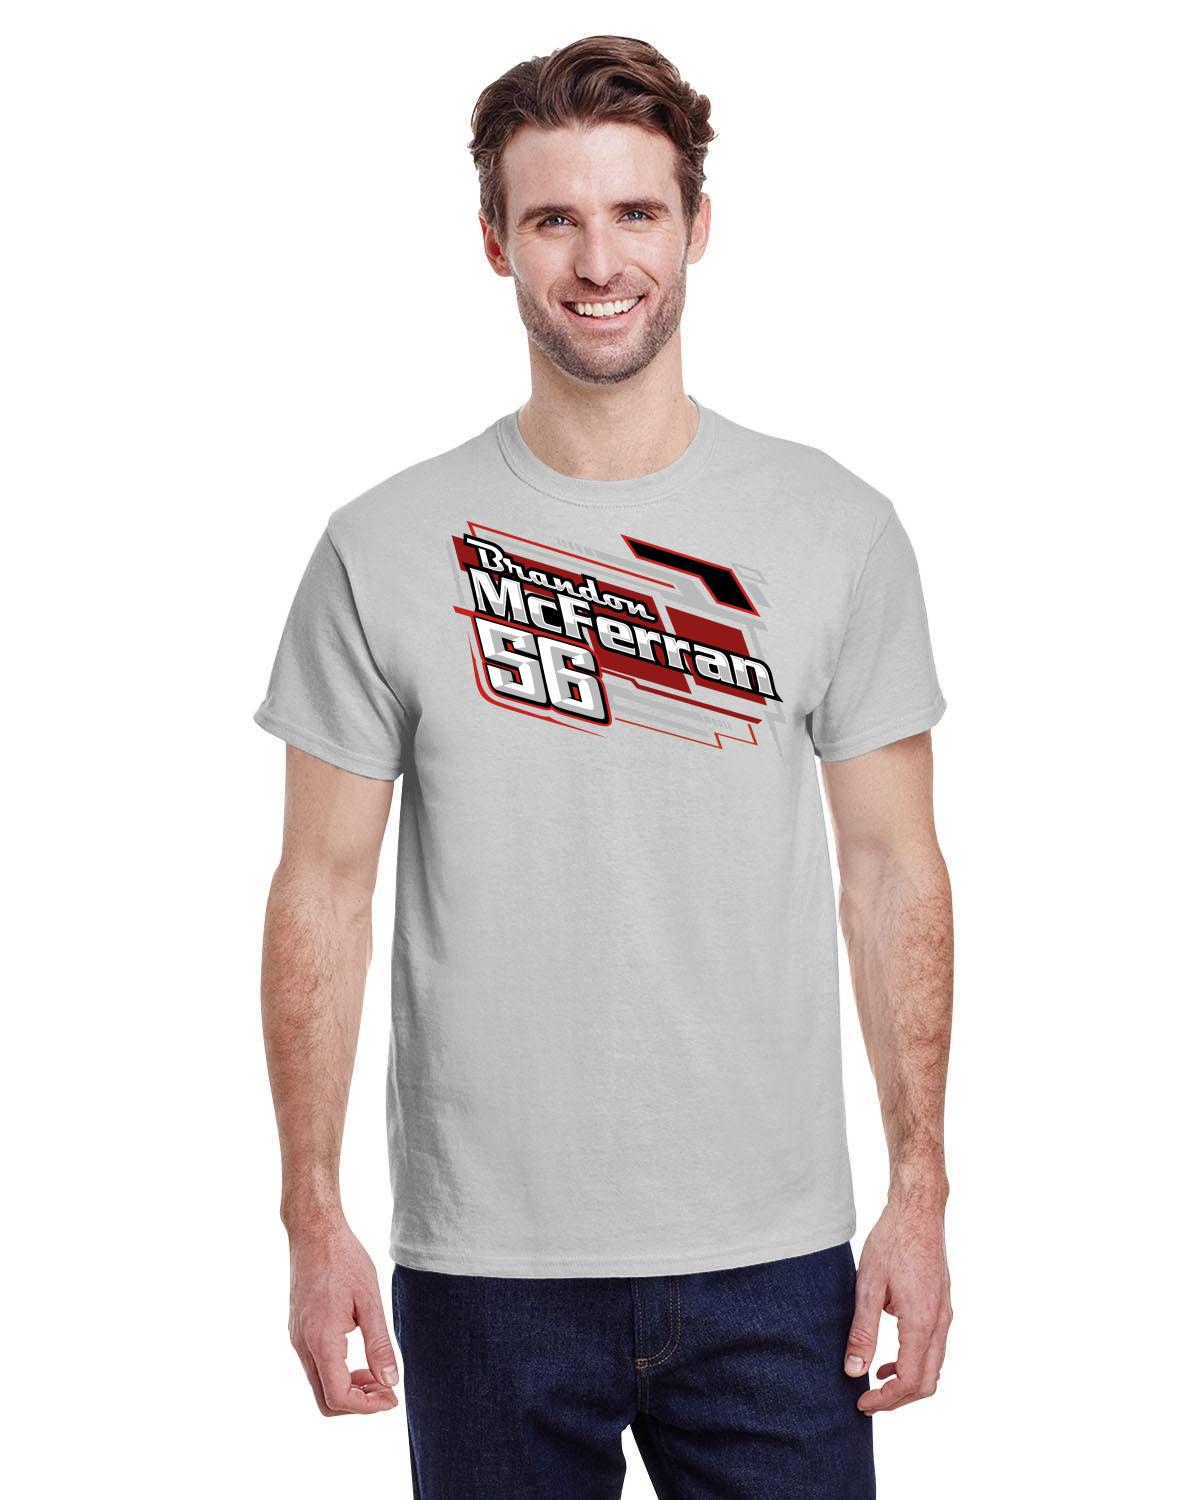 Brandon McFerran Racing Men's Tshirt